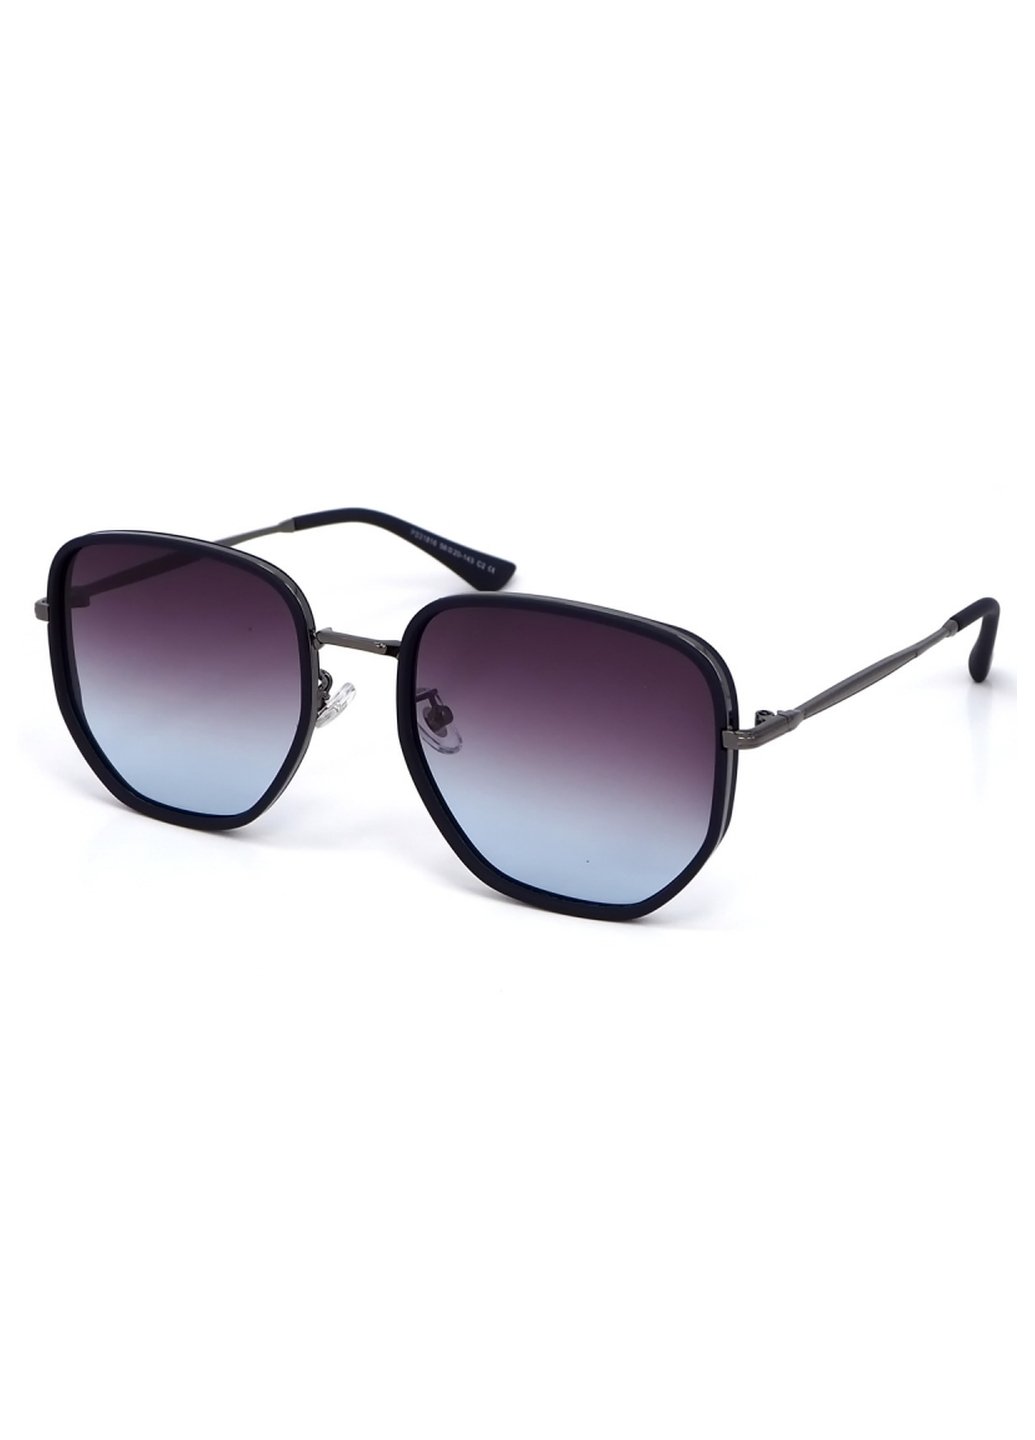 Купить Женские солнцезащитные очки Merlini с поляризацией S31816P 117036 - Черный в интернет-магазине